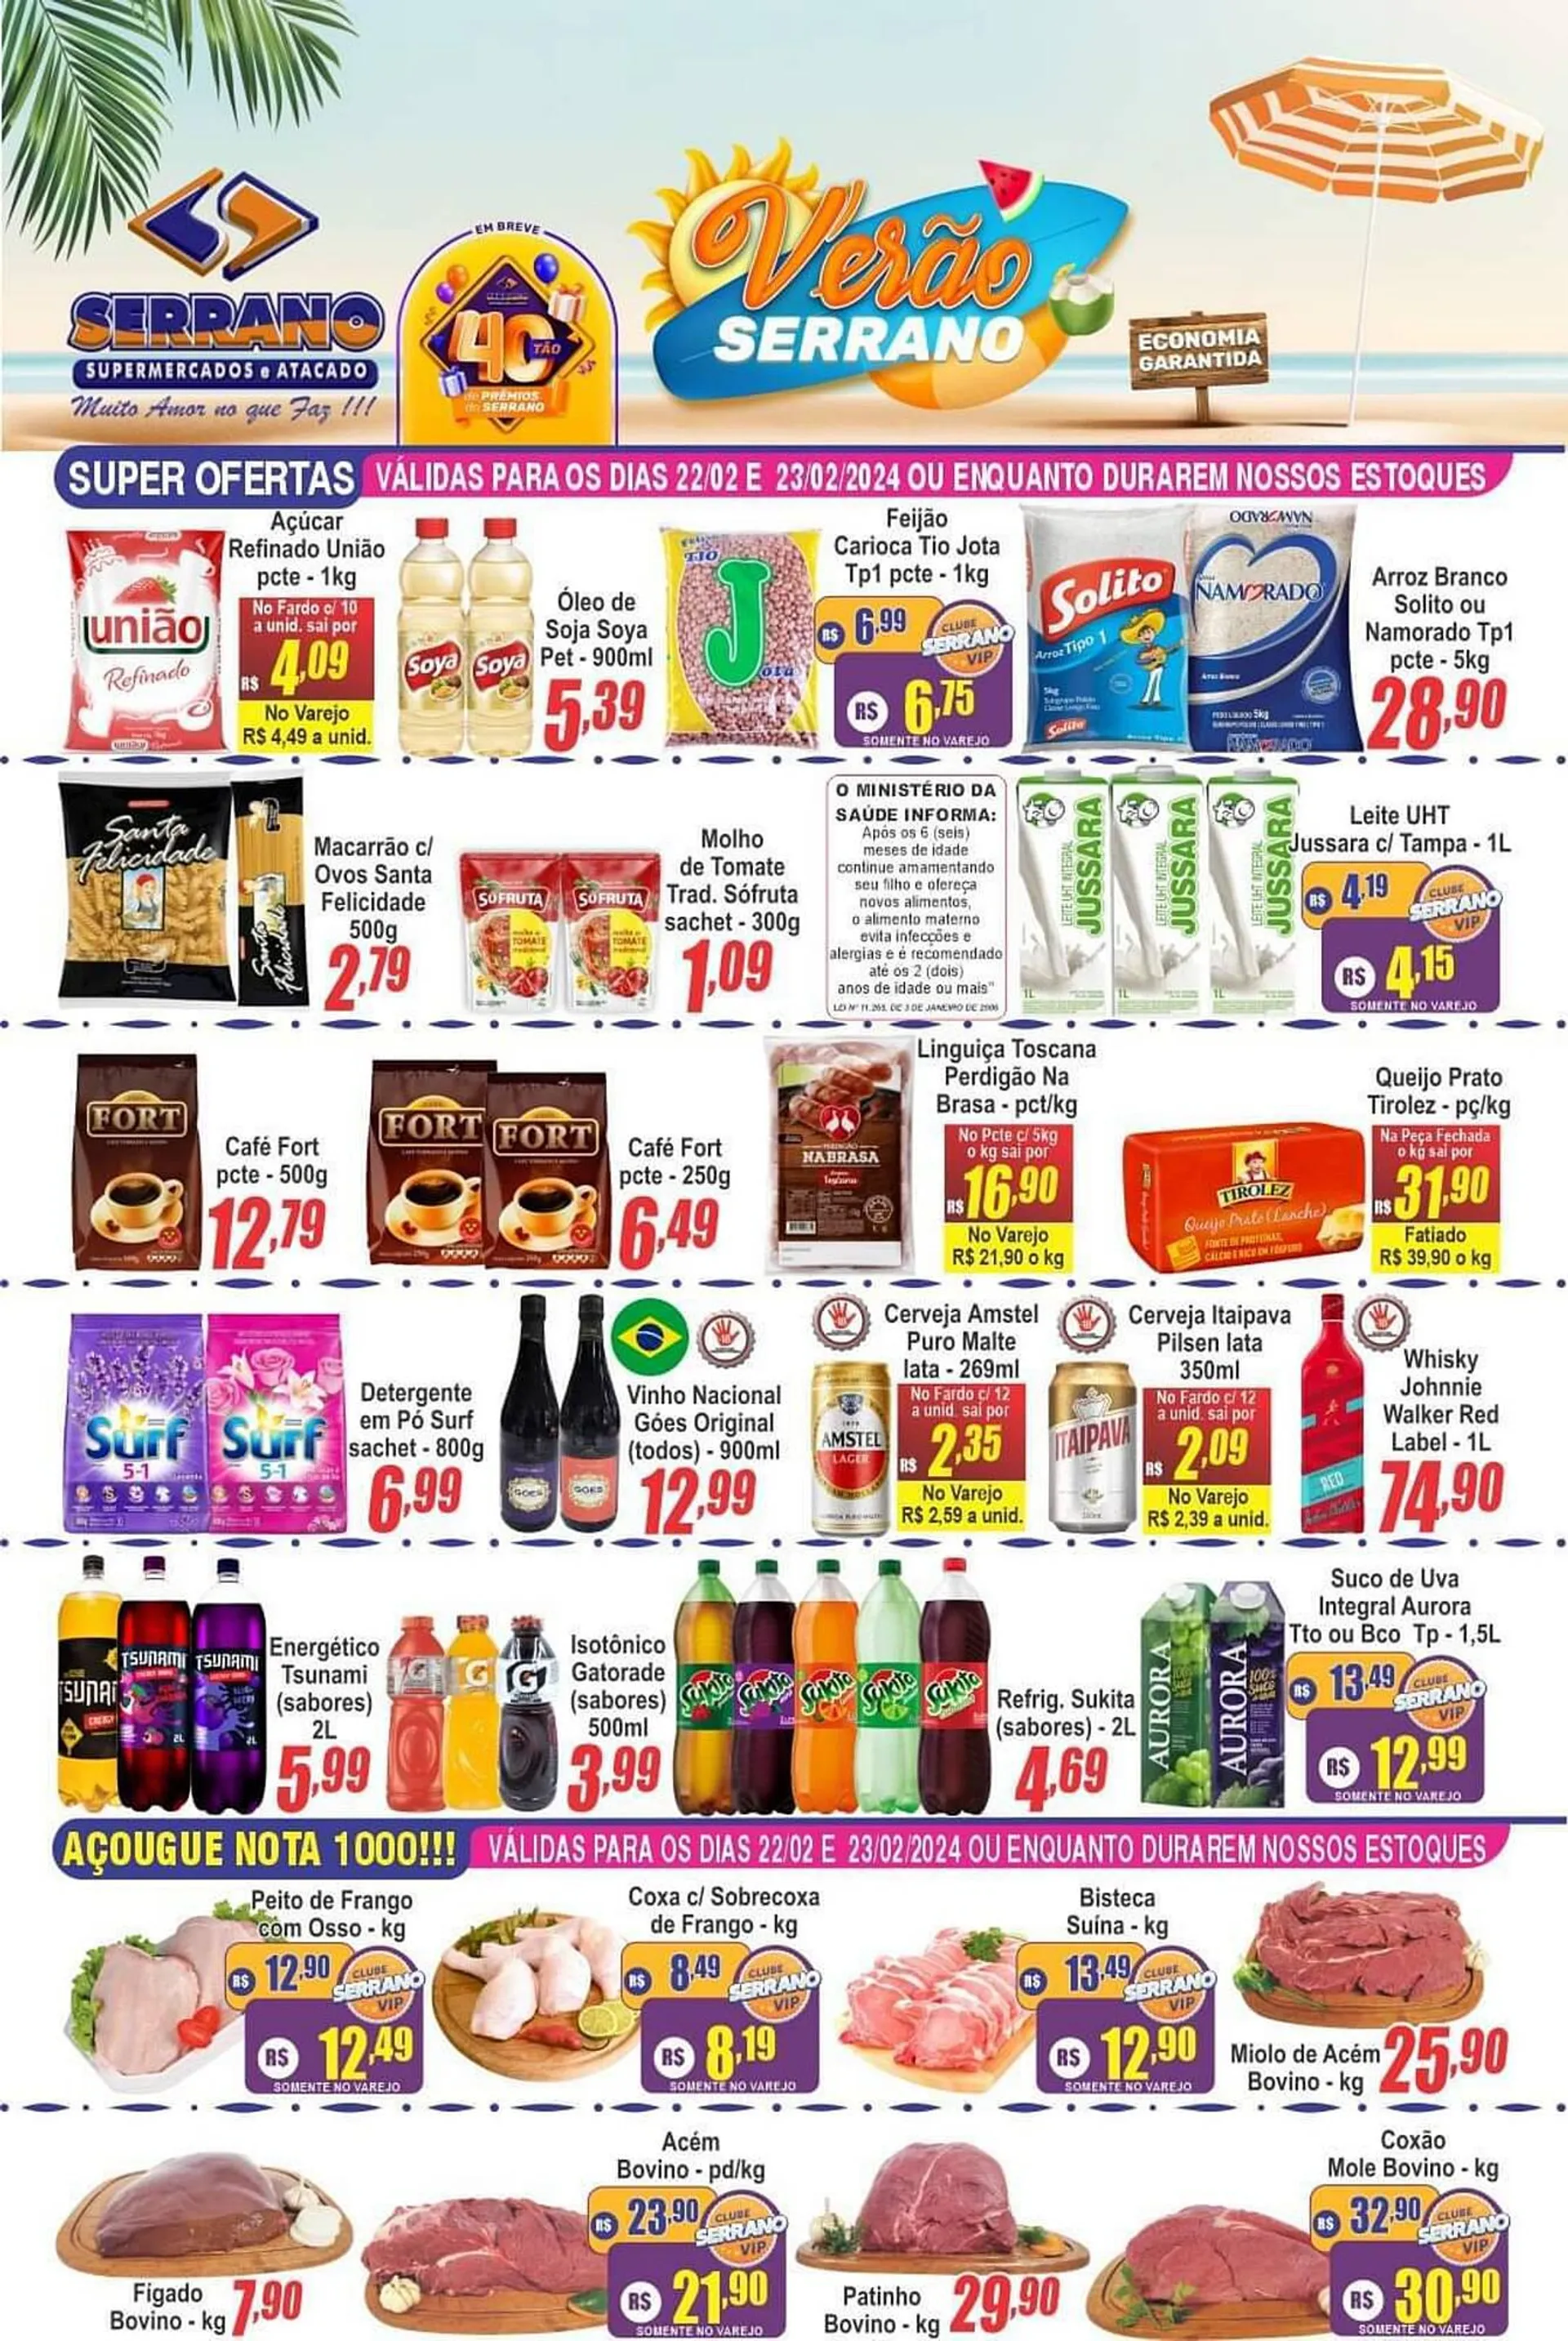 Encarte de Catálogo Serrano Supermercado 22 de fevereiro até 28 de fevereiro 2024 - Pagina 